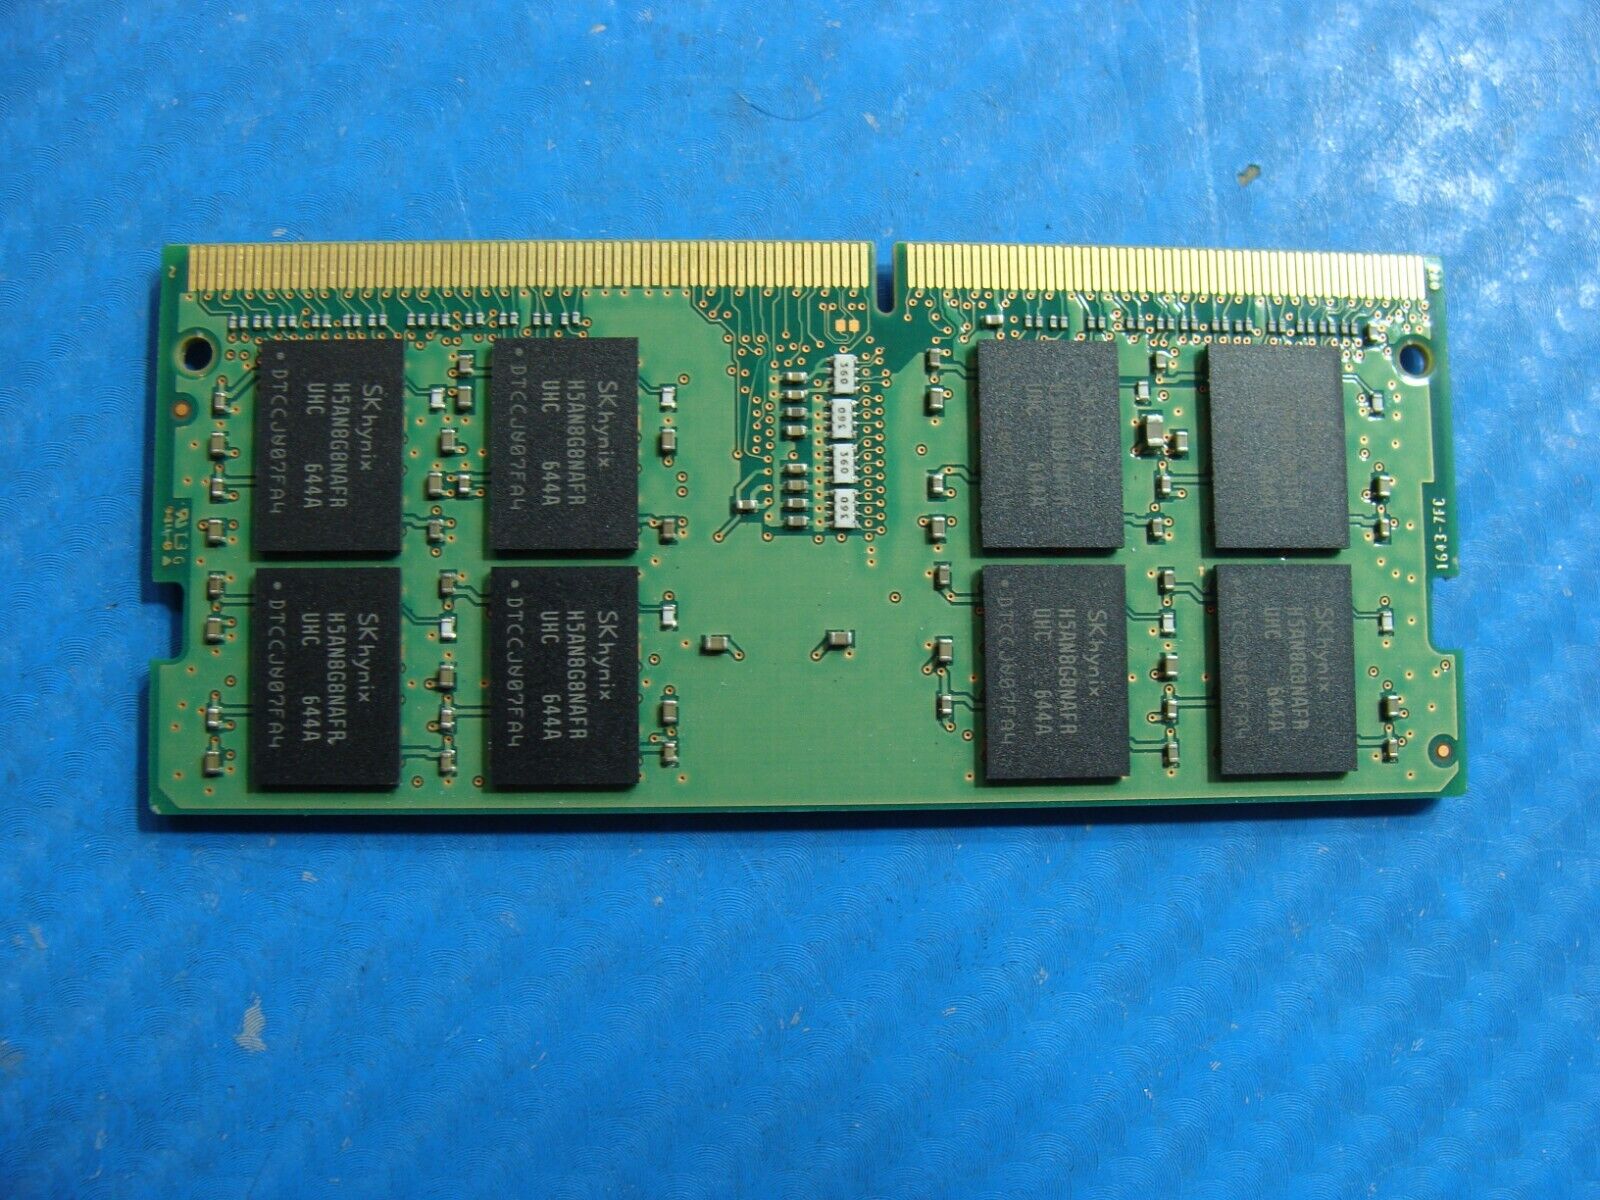 Dell 7490 SK hynix 16GB 2Rx8 PC4-2400T Memory RAM SO-DIMM HMA82GS6AFR8N-UH